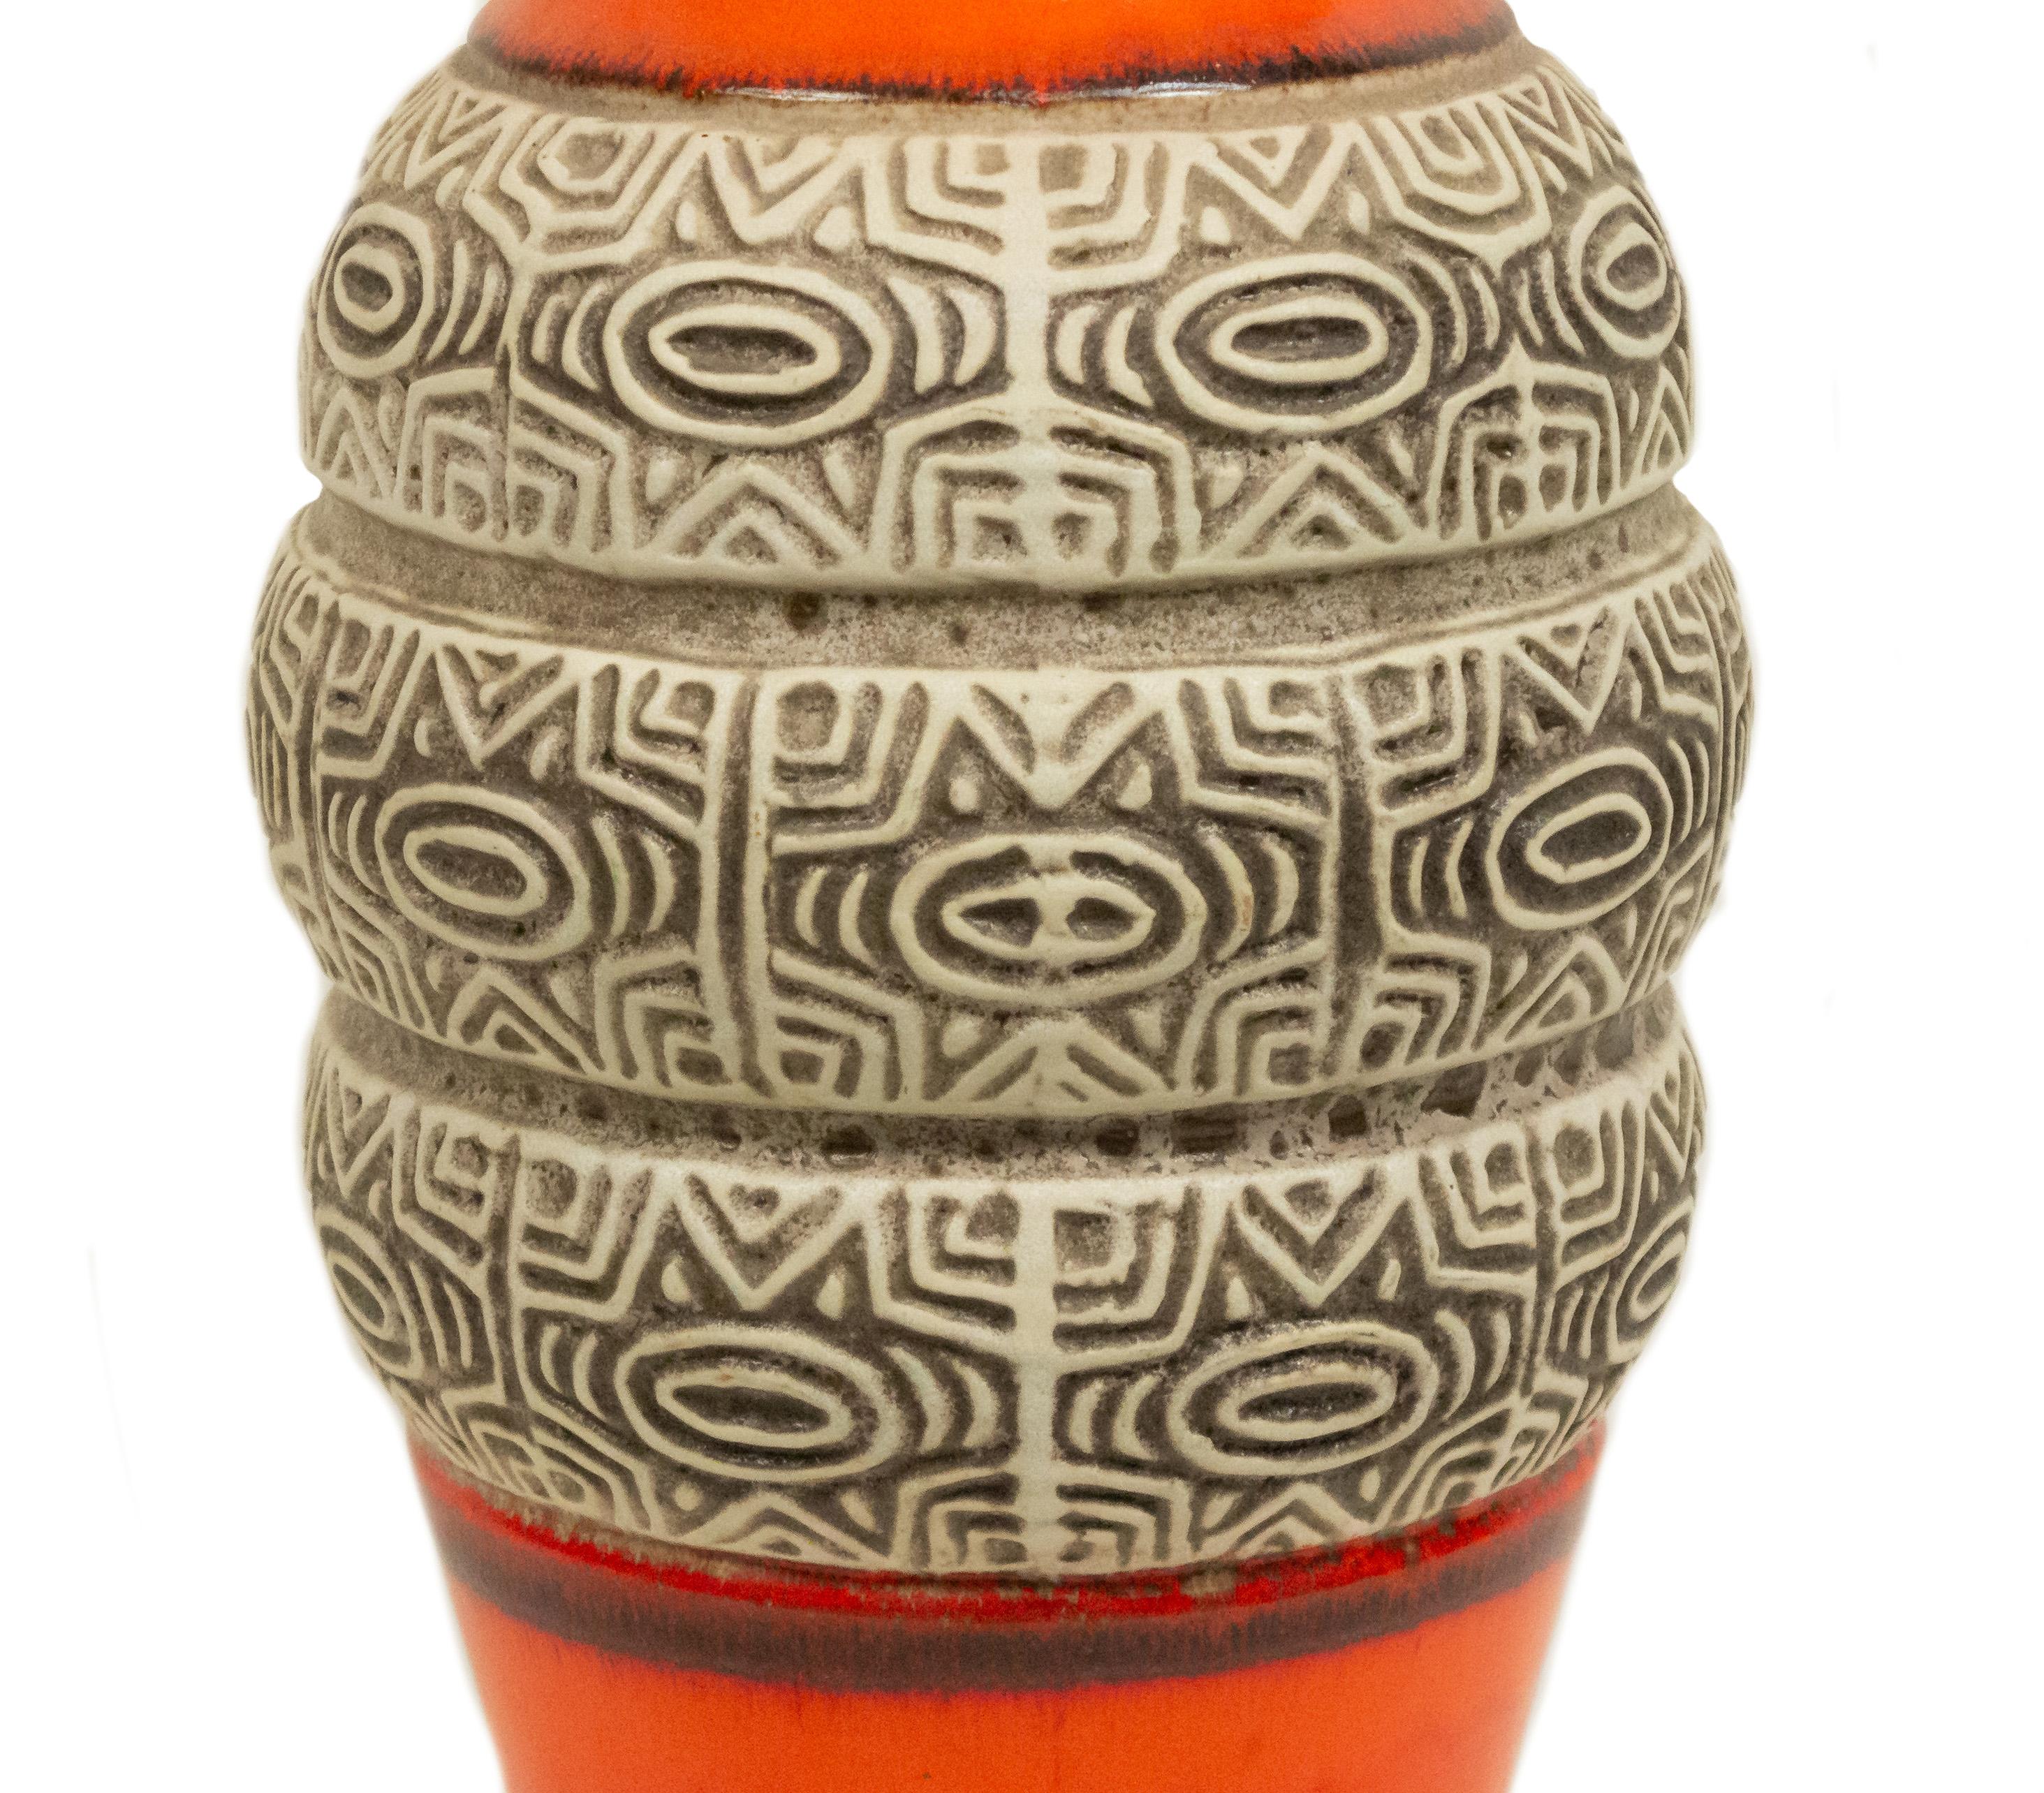 Vase cylindrique de forme orange d'après-guerre en Allemagne de l'Ouest, avec une partie centrale incisée de bandes géométriques et nervurées beiges (étiquette d'origine attachée vú KERAMIK).
     